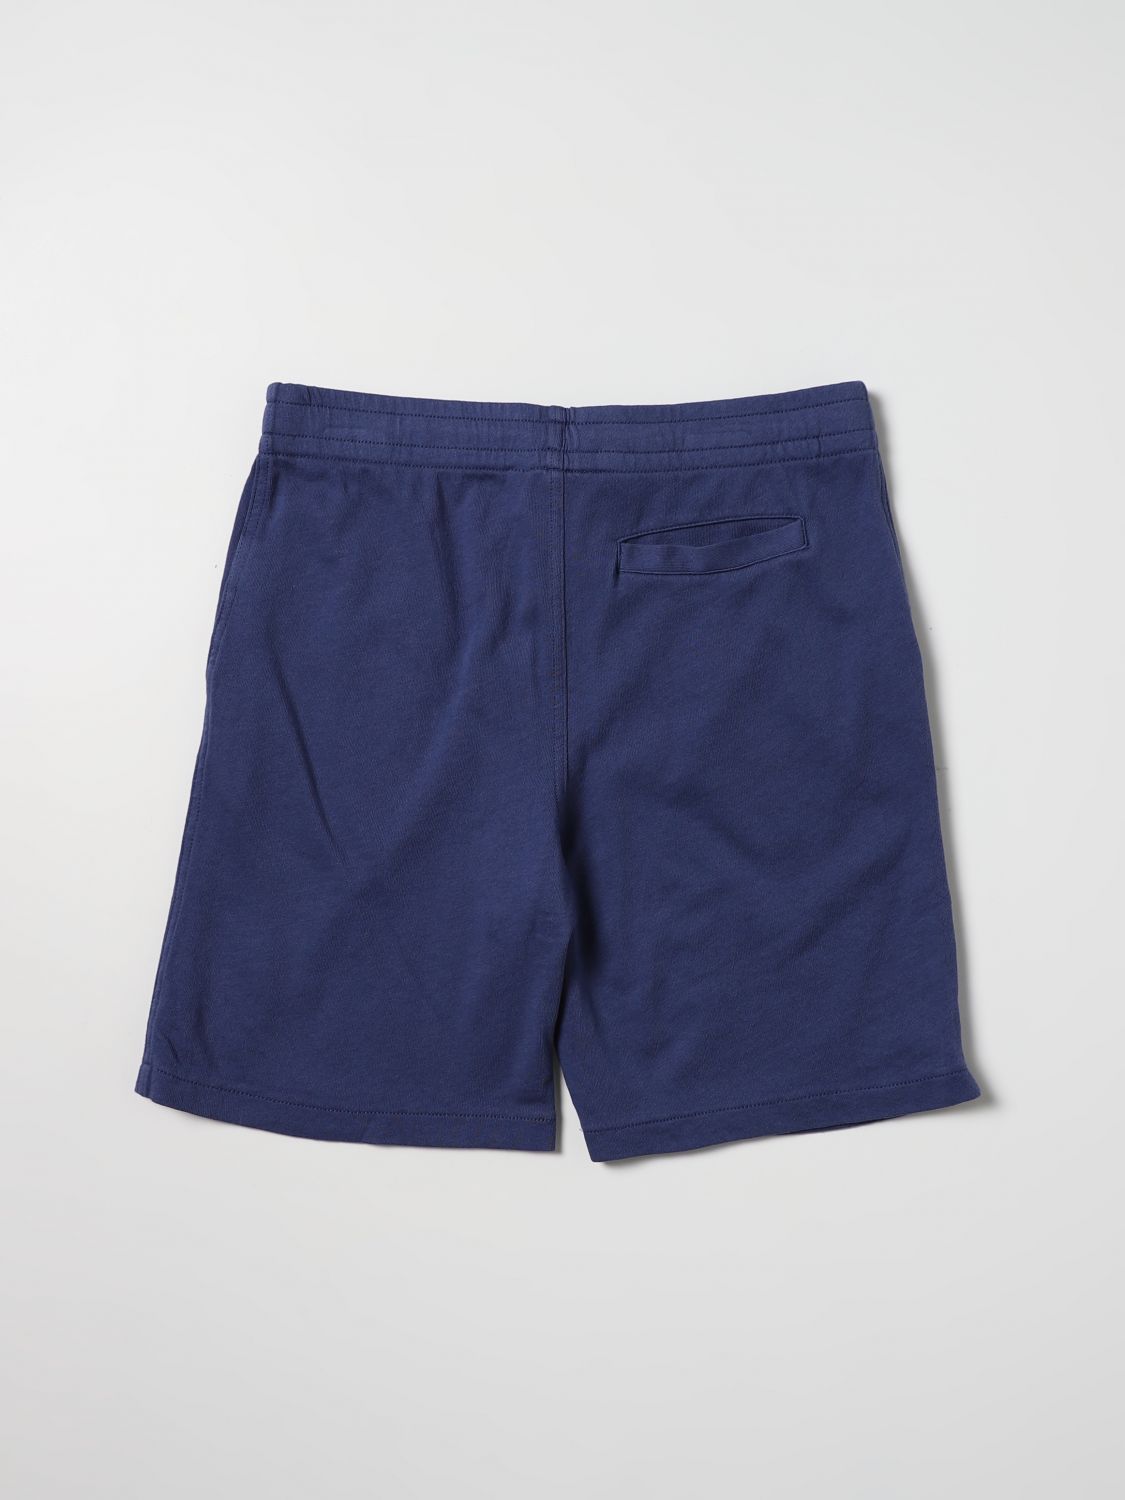 Pantaloncino Polo Ralph Lauren: Pantaloncino Polo Ralph Lauren bambino blue 2